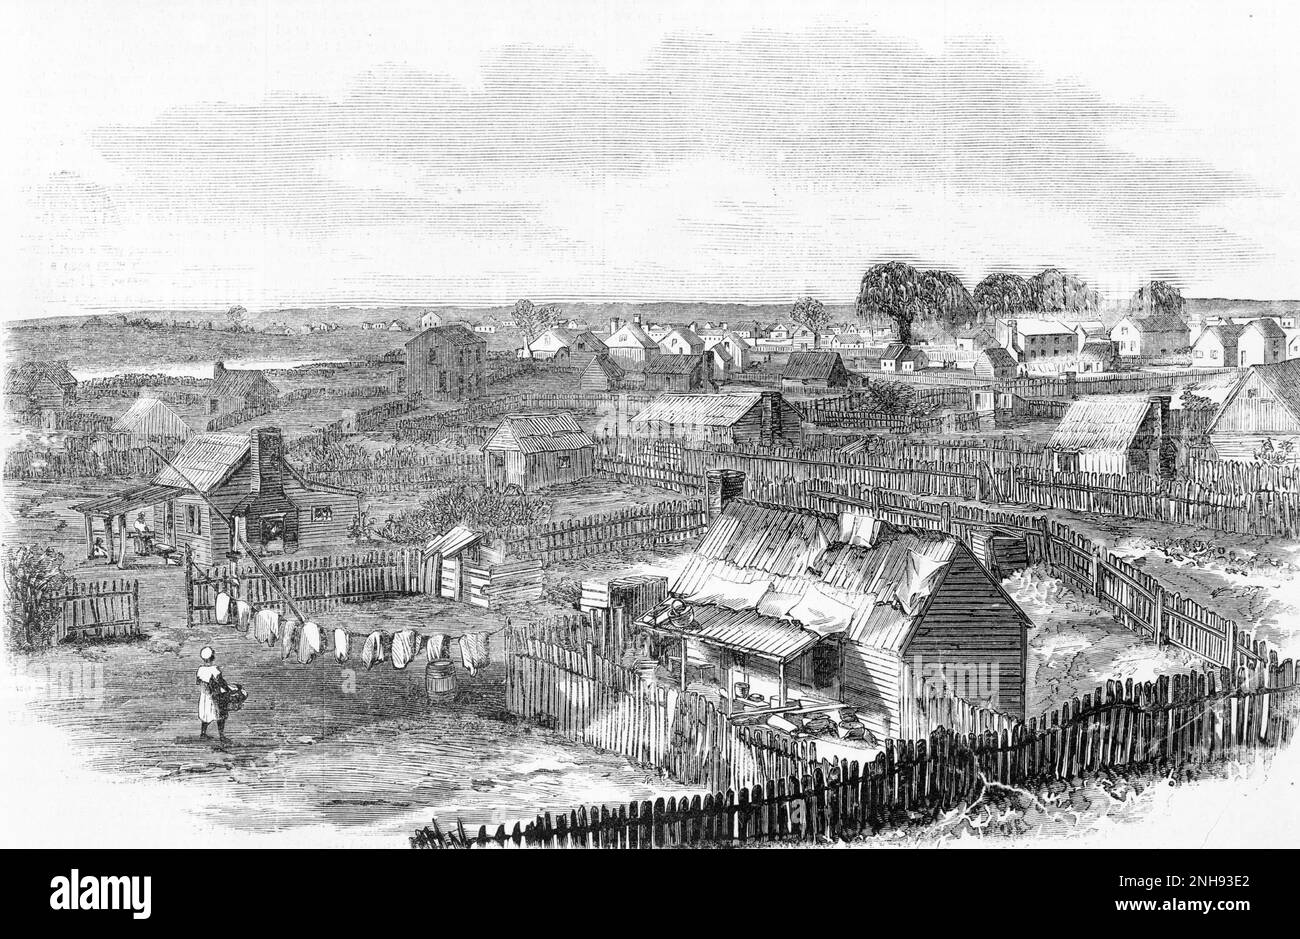 Freedman's Village, Hampton, Virginia, eine Siedlung, die von den USA gegründet wurde Regierung 1863 für ehemalige Sklaven. Holzgravierung, Harper's Weekly, 30. September 1865. Stockfoto